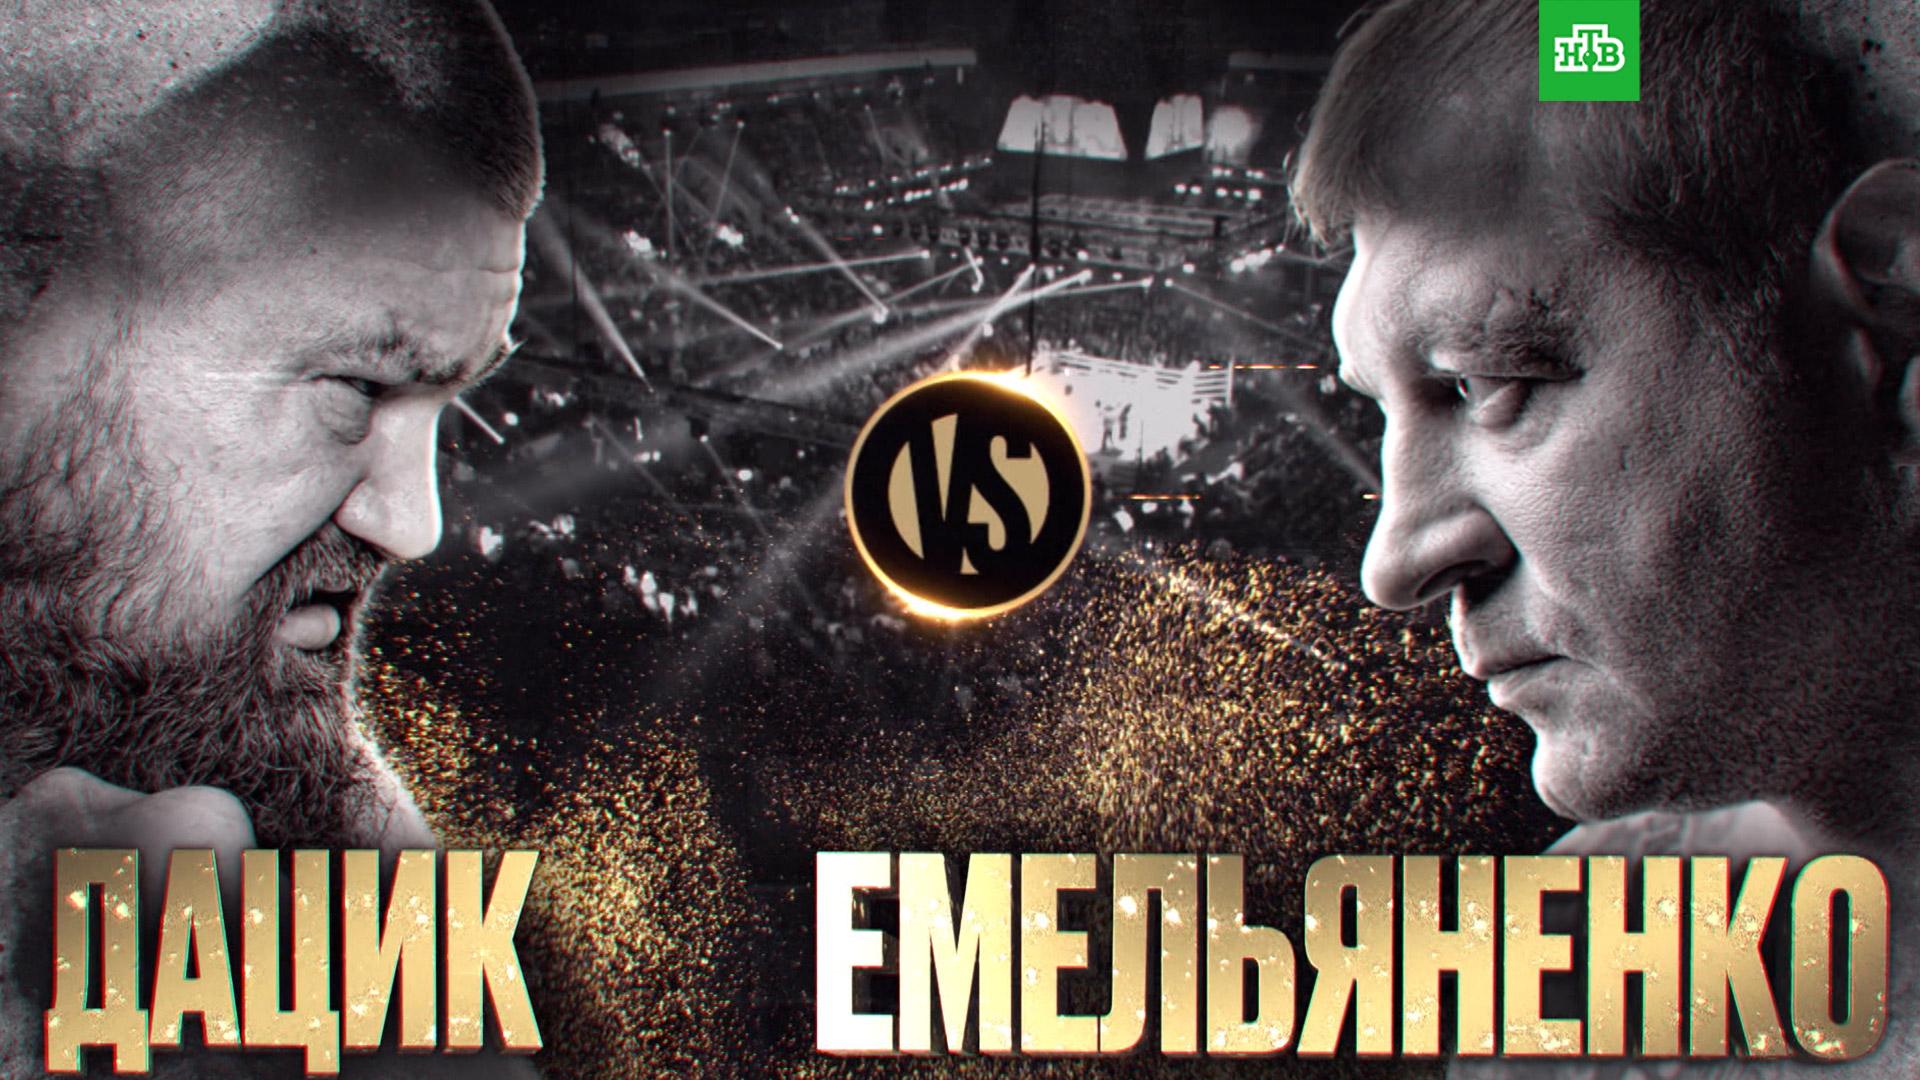 Телеканал НТВ в прямом эфире покажет бой Емельяненко – Дацик